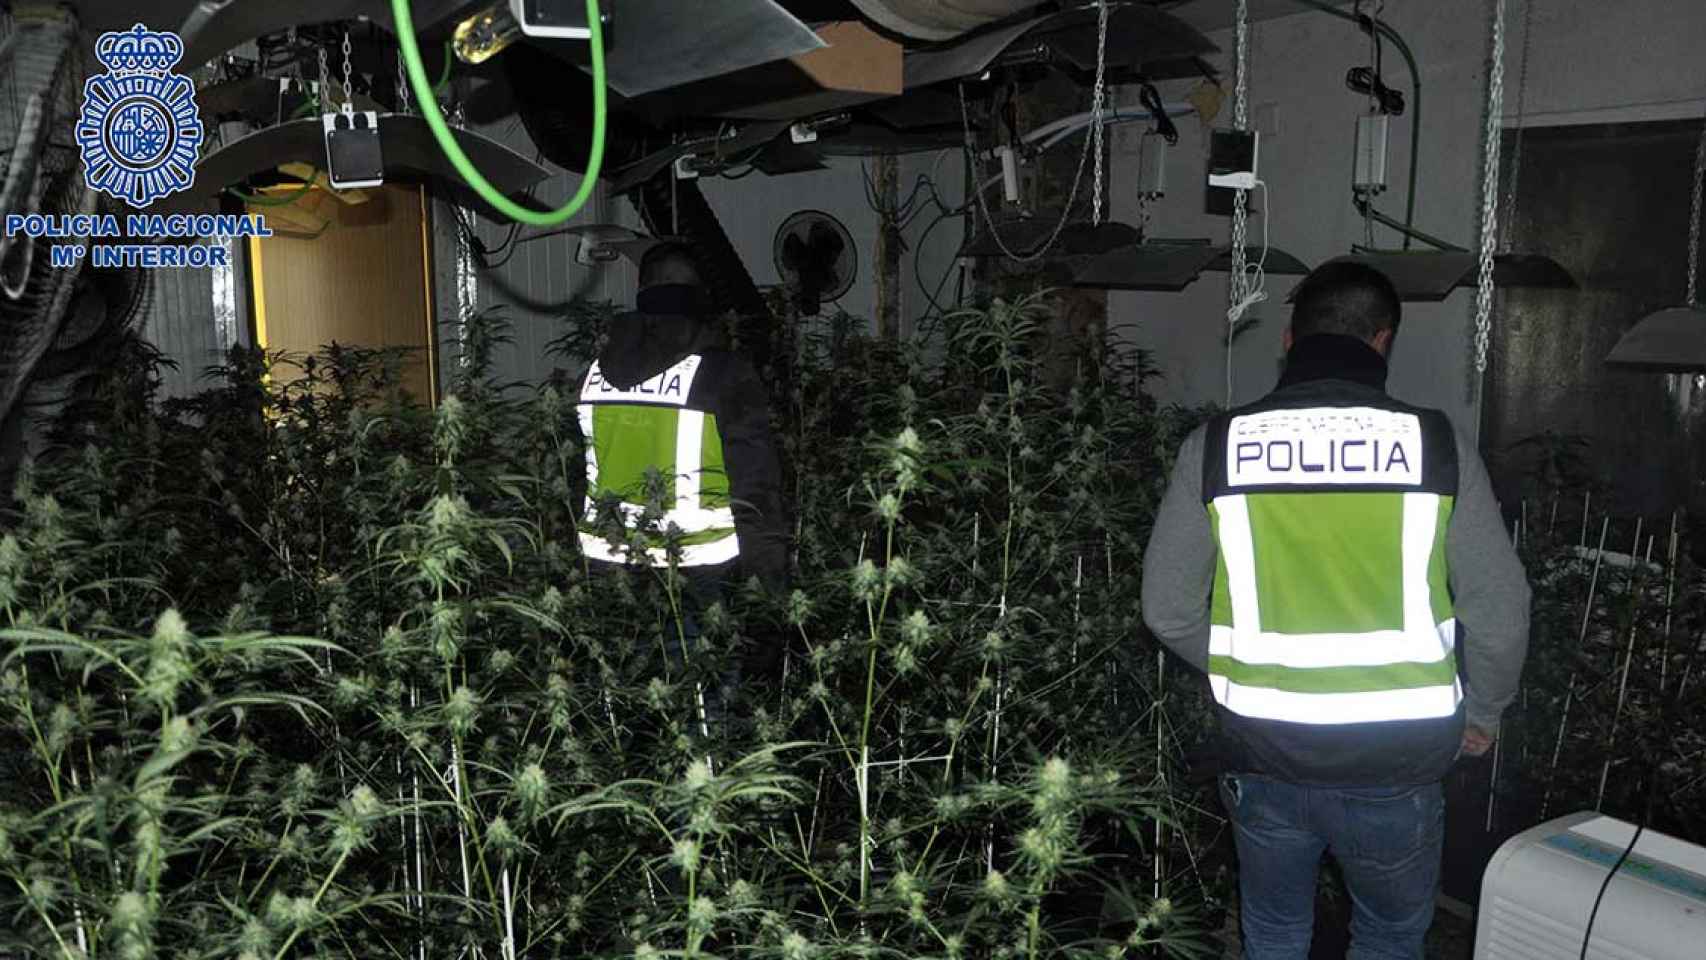 La Policía desmantela una plantación de marihuana en una nave en Polinyà / POLICIA